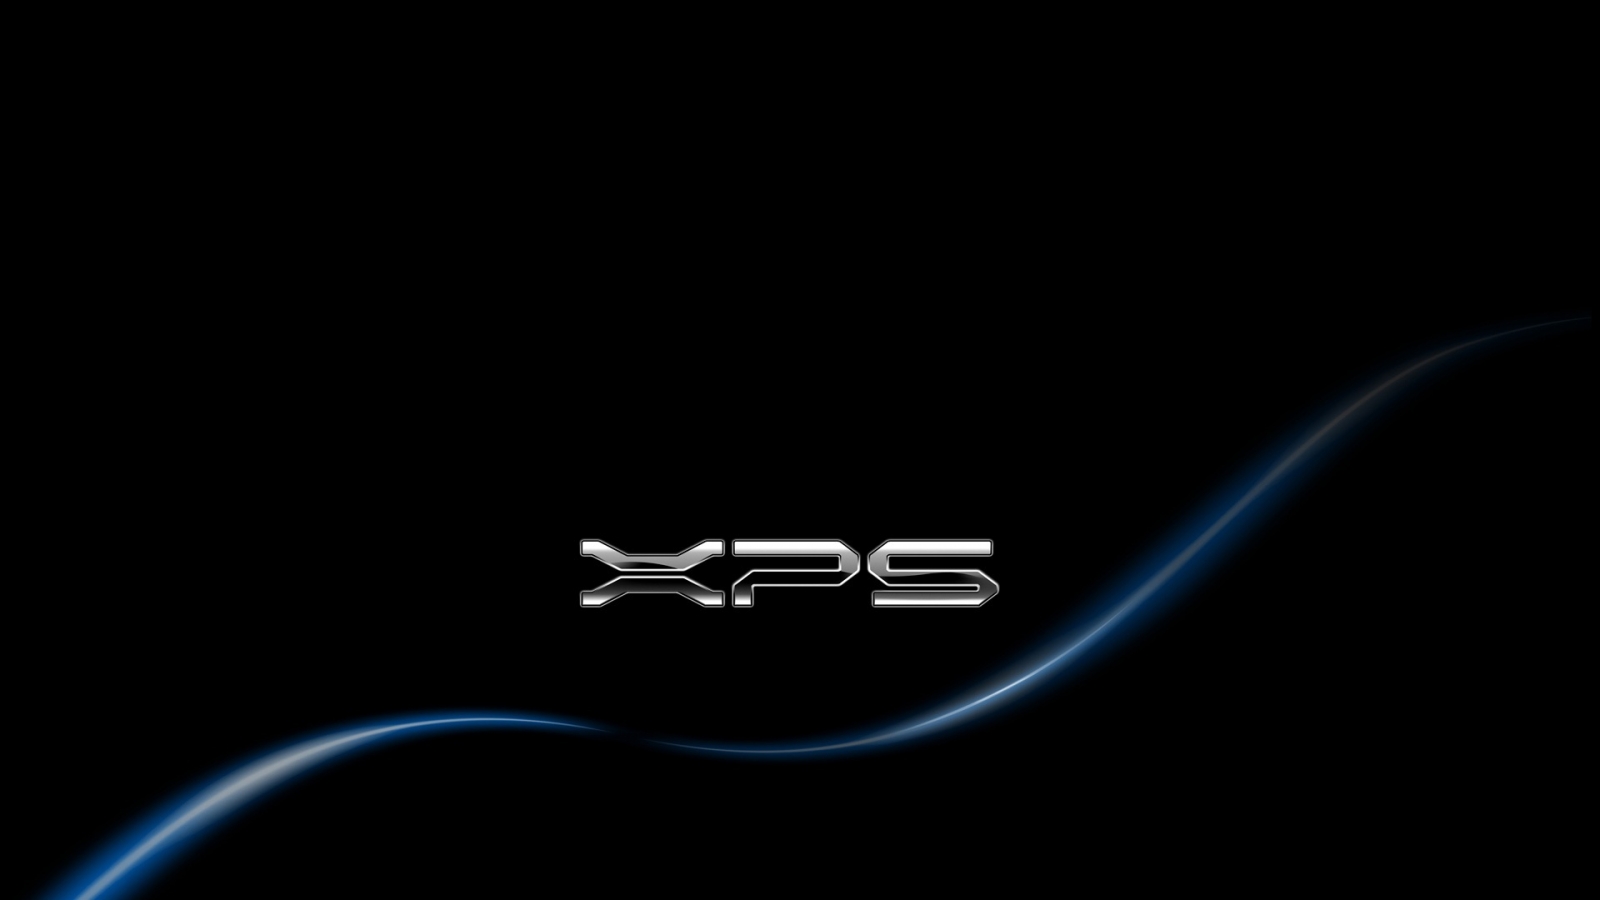 Dell Xps Gaming Blue X HDtv Wallpaper